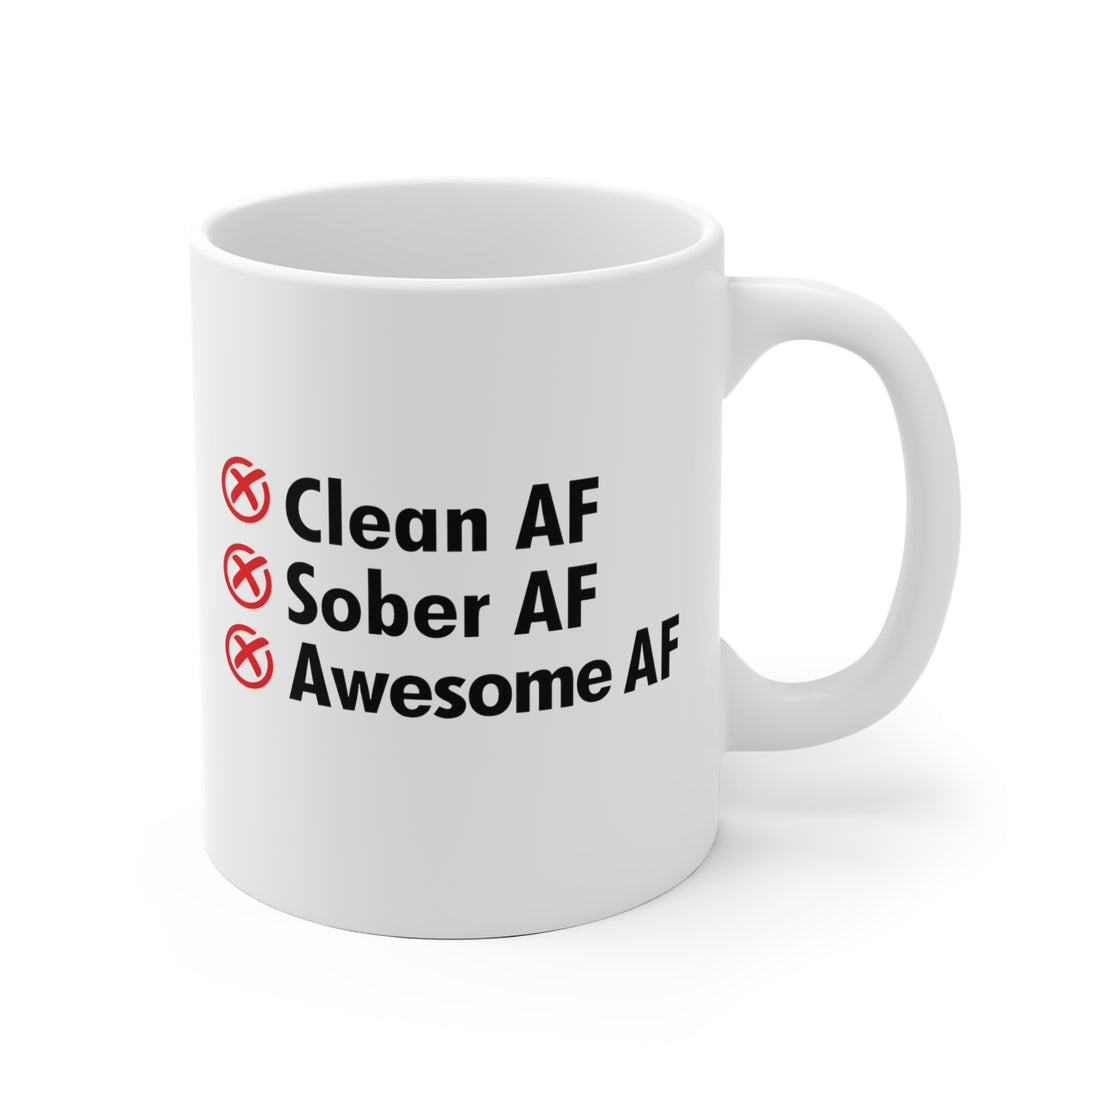 Clean AF Sober AF Awesome AF - White Ceramic Mug 2 sizes Available